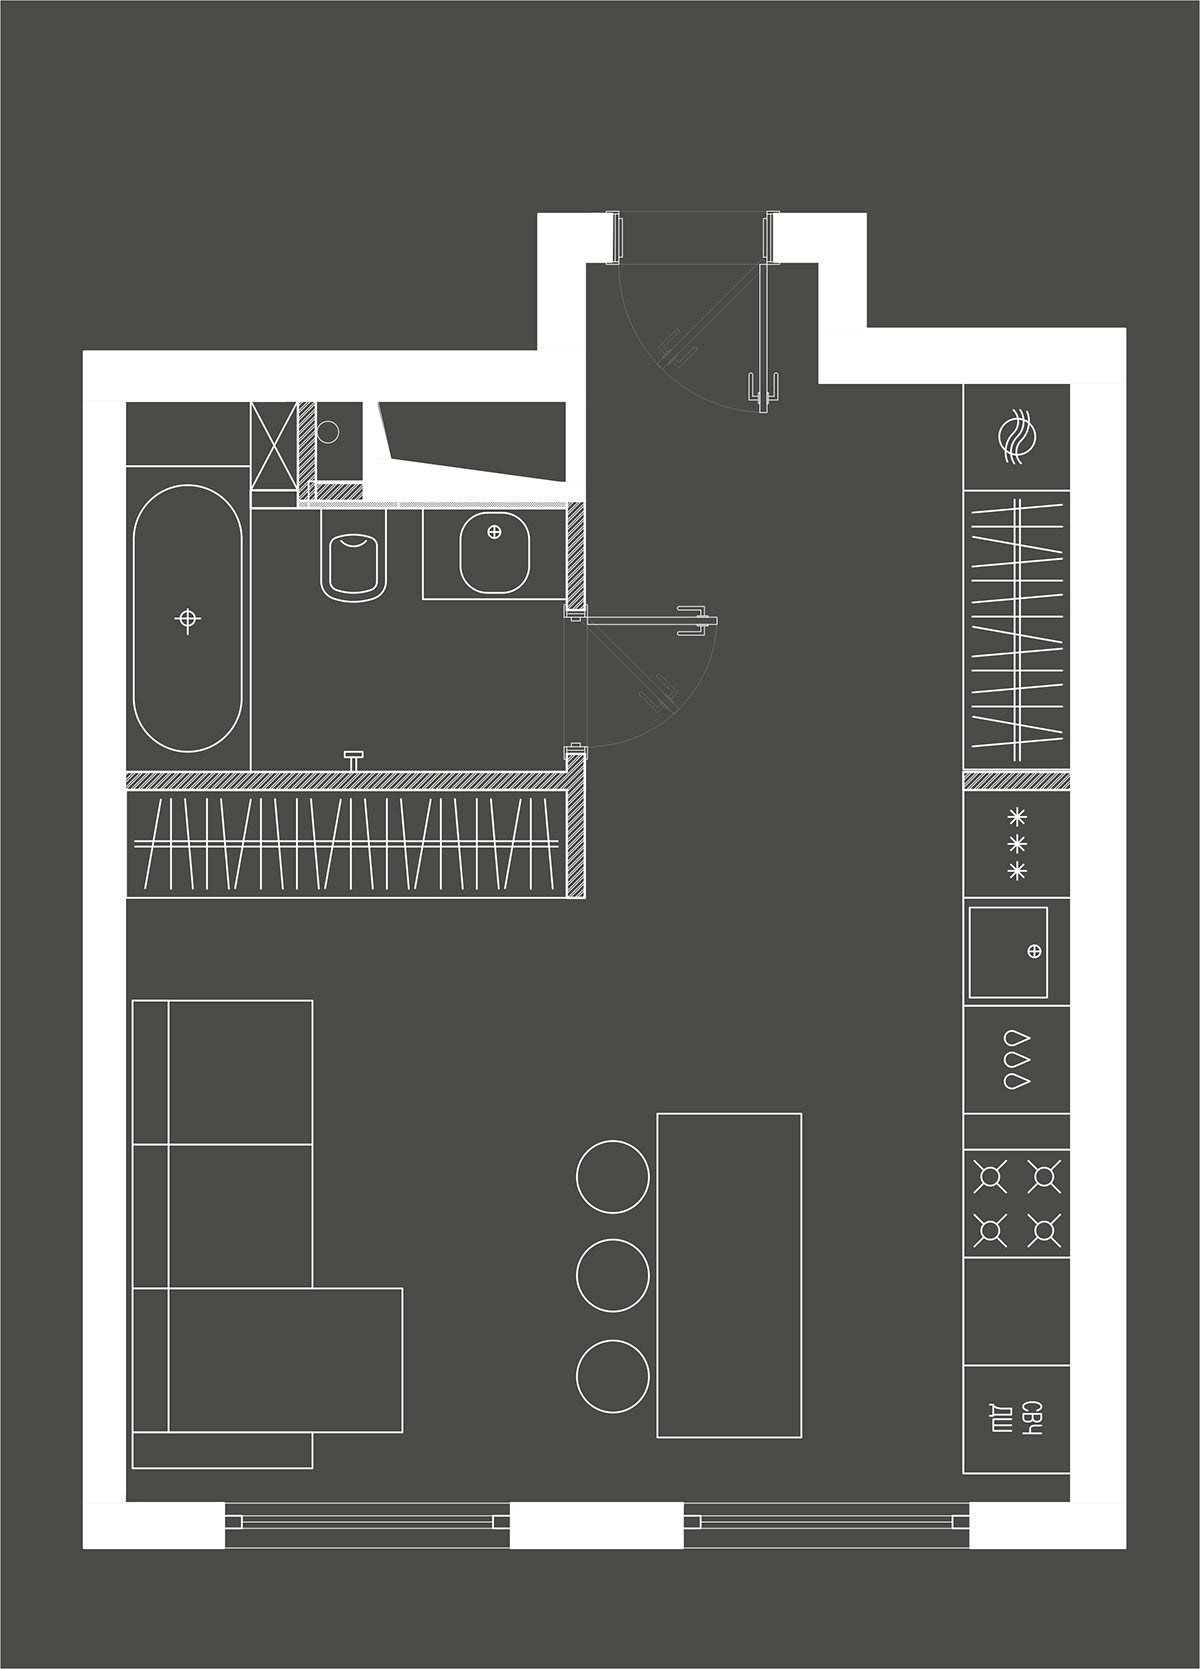 极致的空间利用 3套45平米小公寓设计